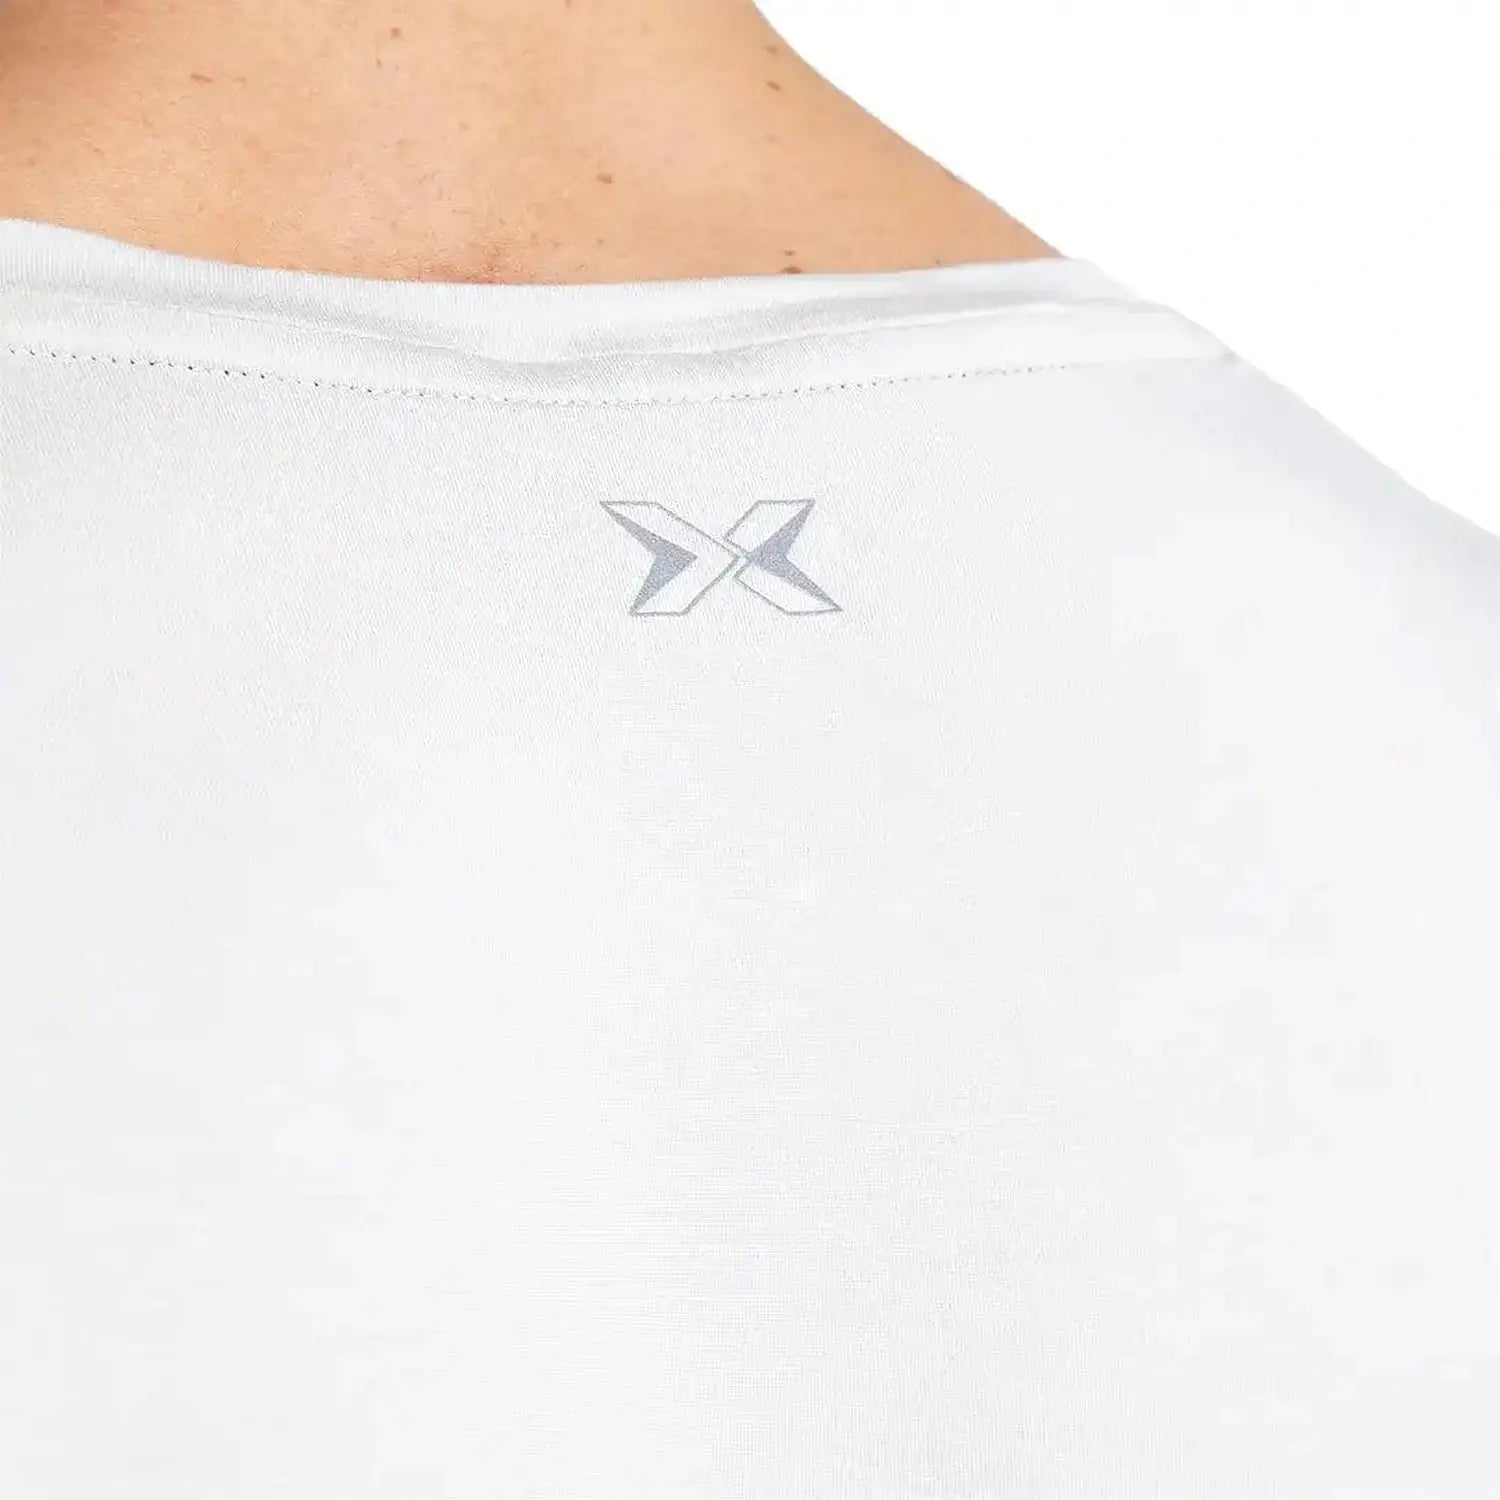 PicSil Herren Sport T-Shirt Kurzarm (Core) Beige kaufen bei HighPowered.ch